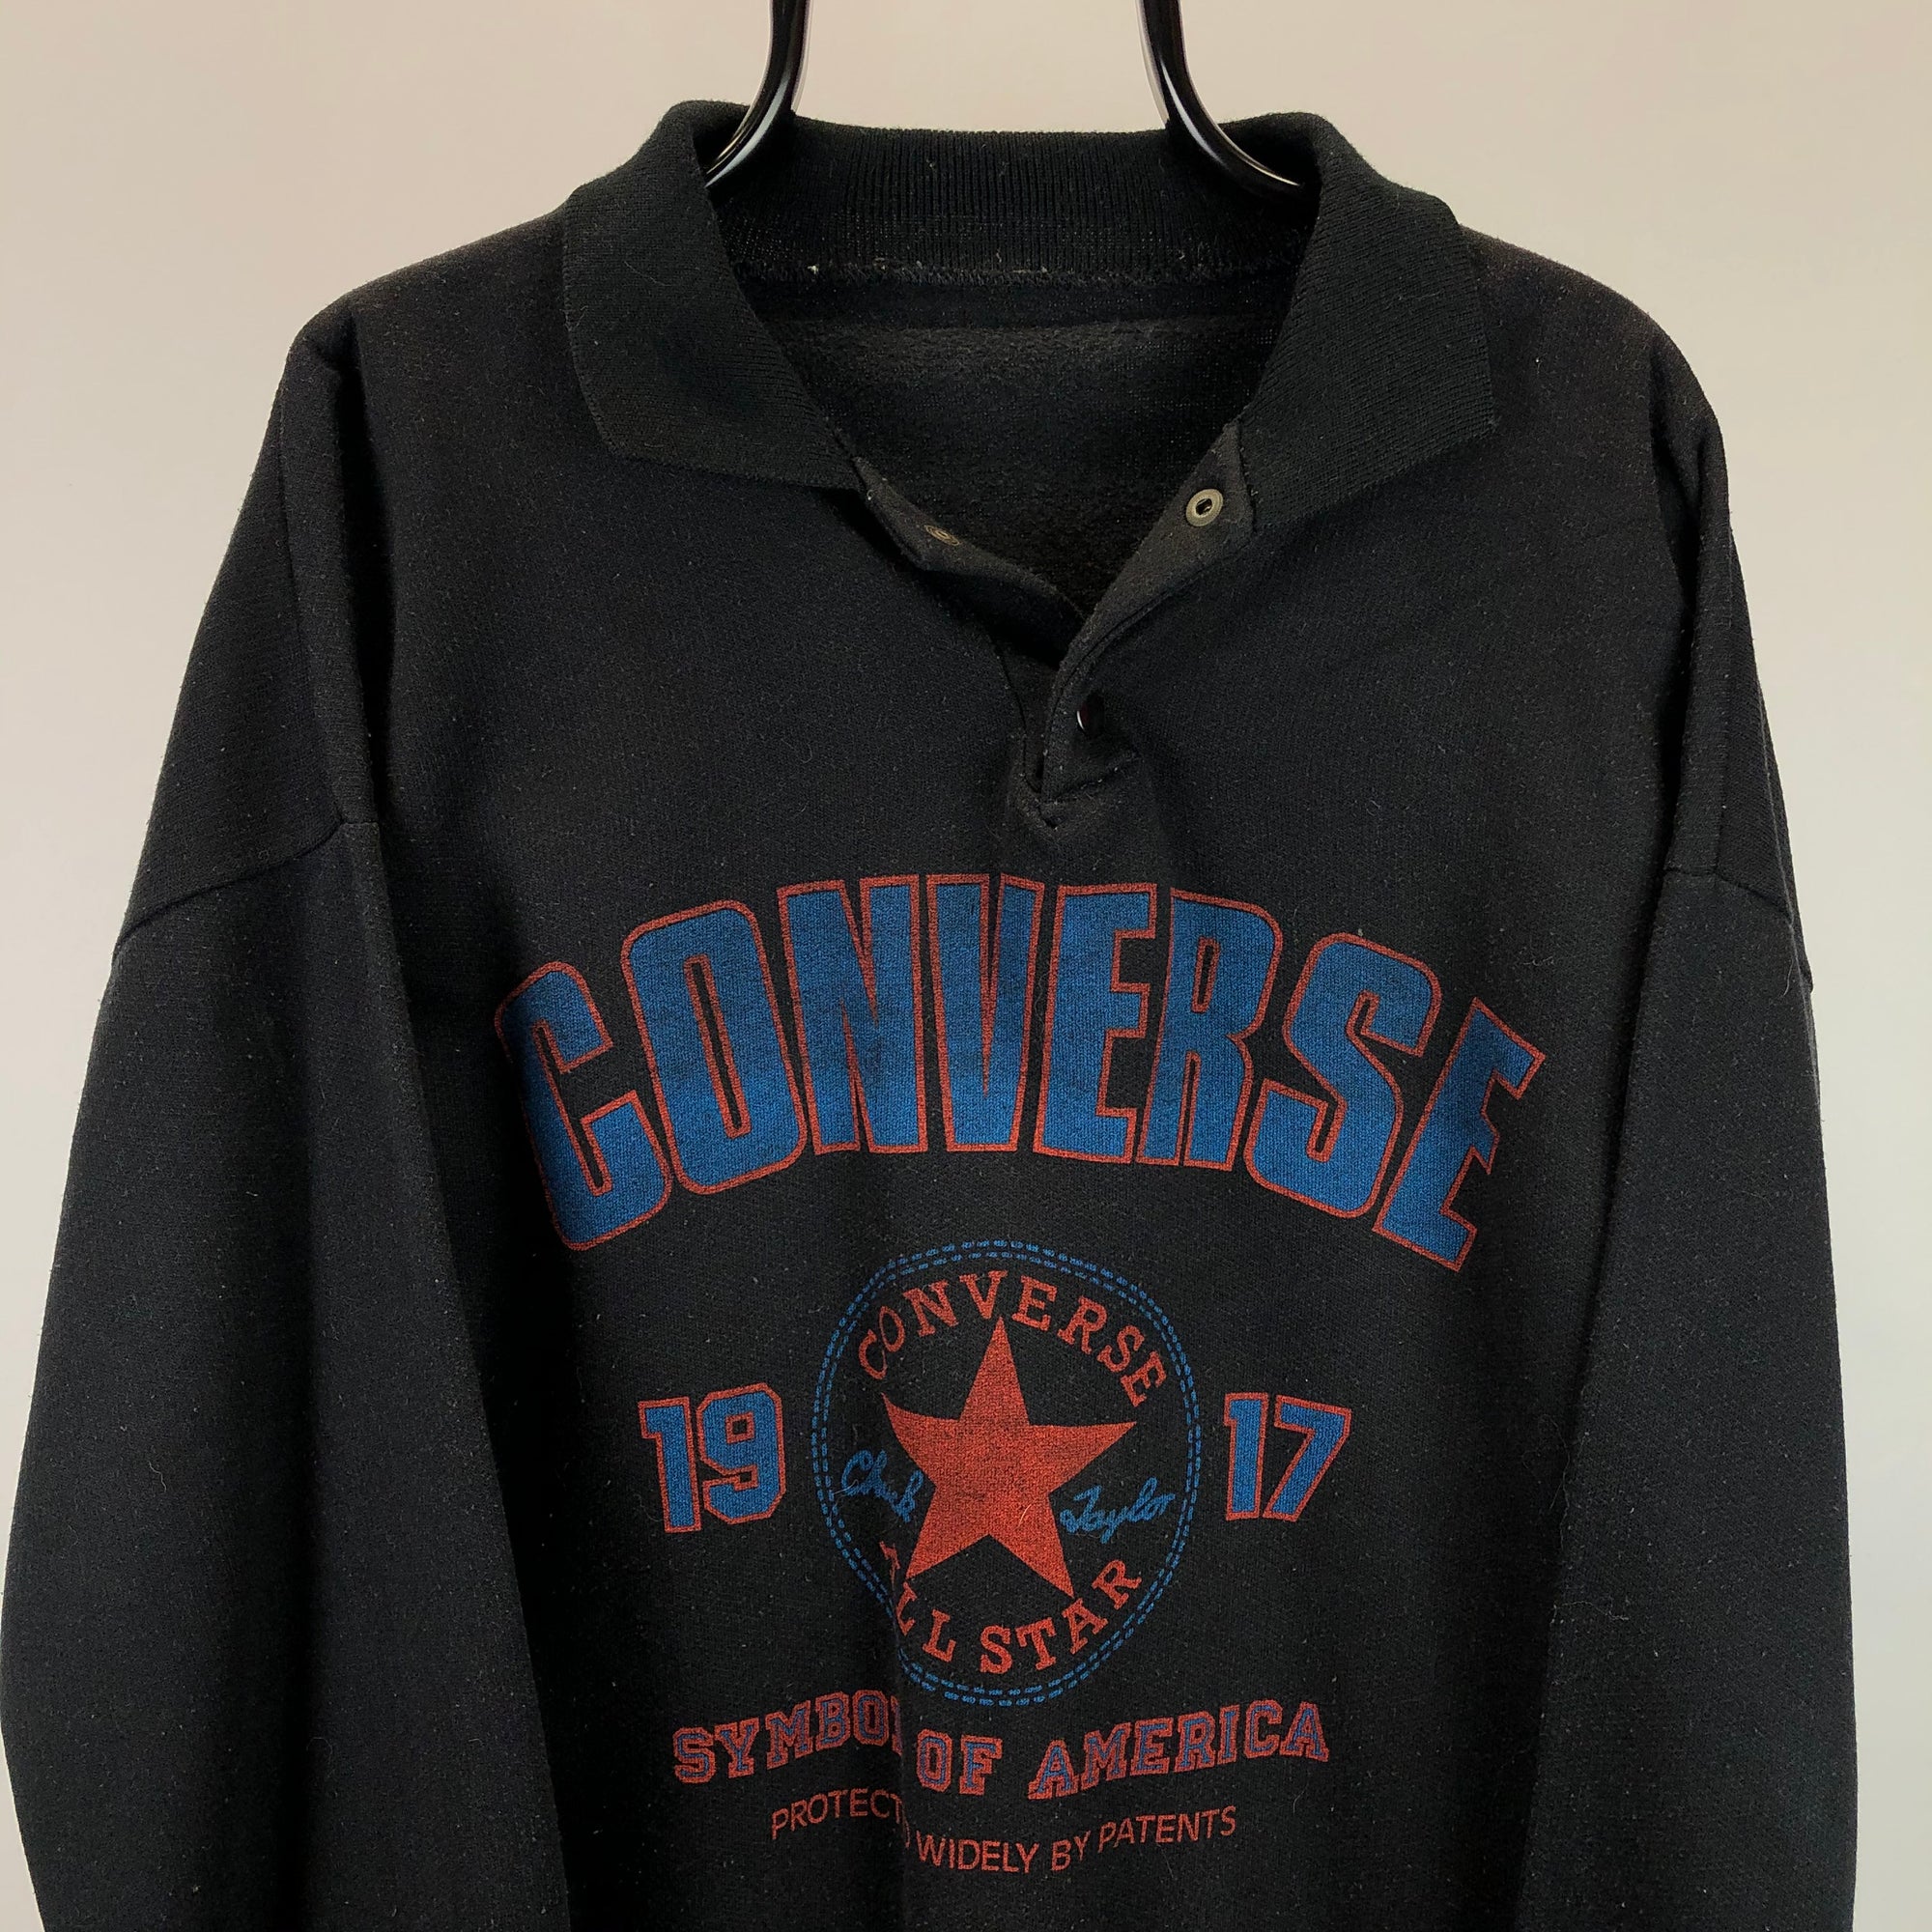 Vintage 80s Converse Button Up Sweatshirt - Men's Large/Women's XL